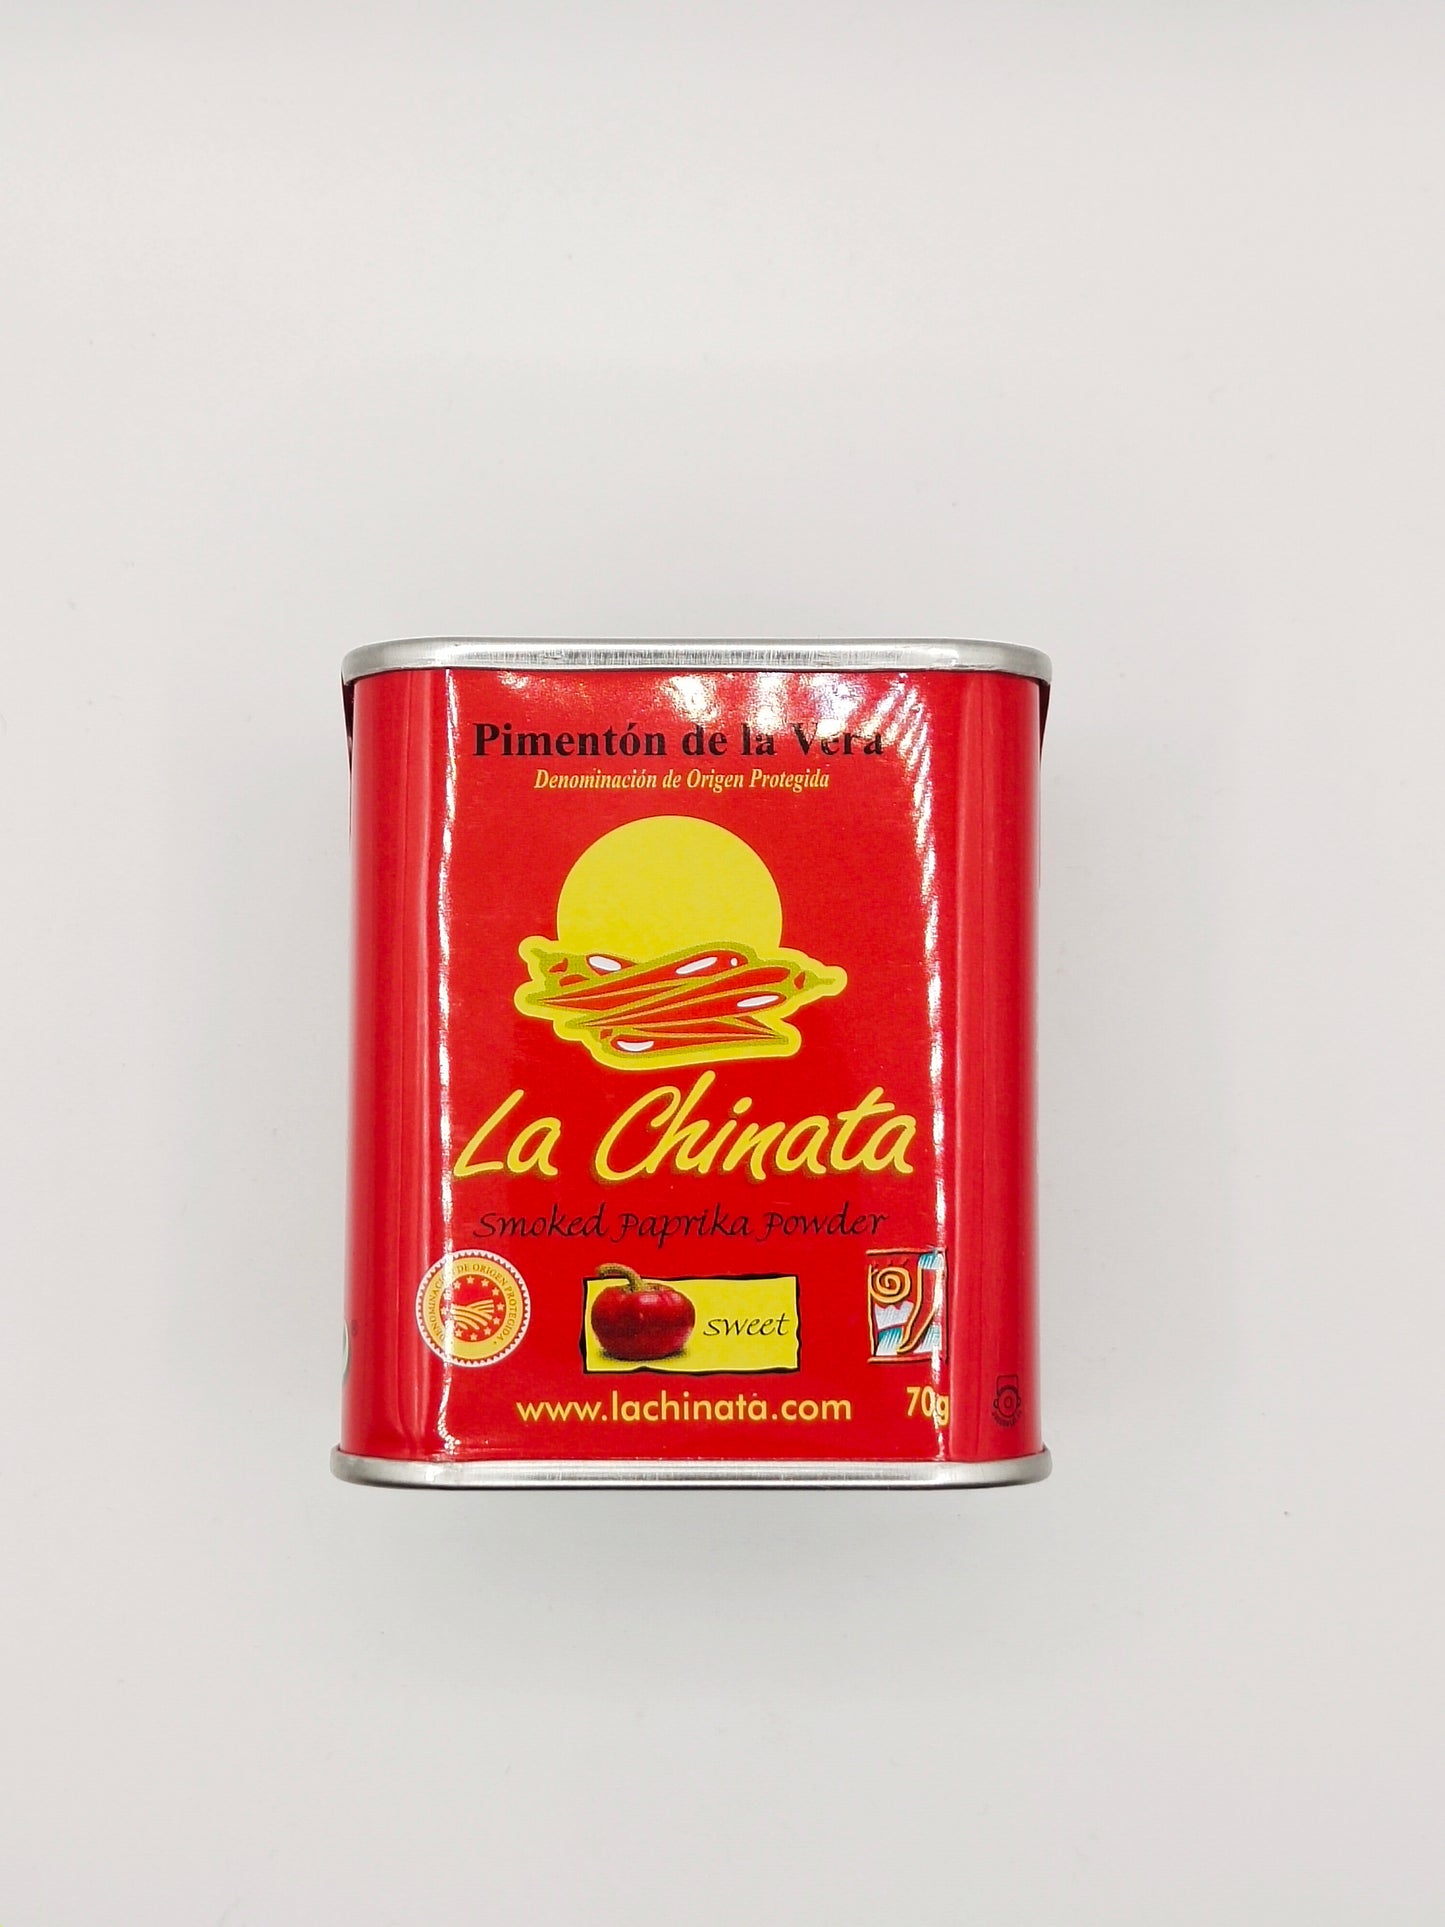 La Chinata - Smoked Paprika Sweet